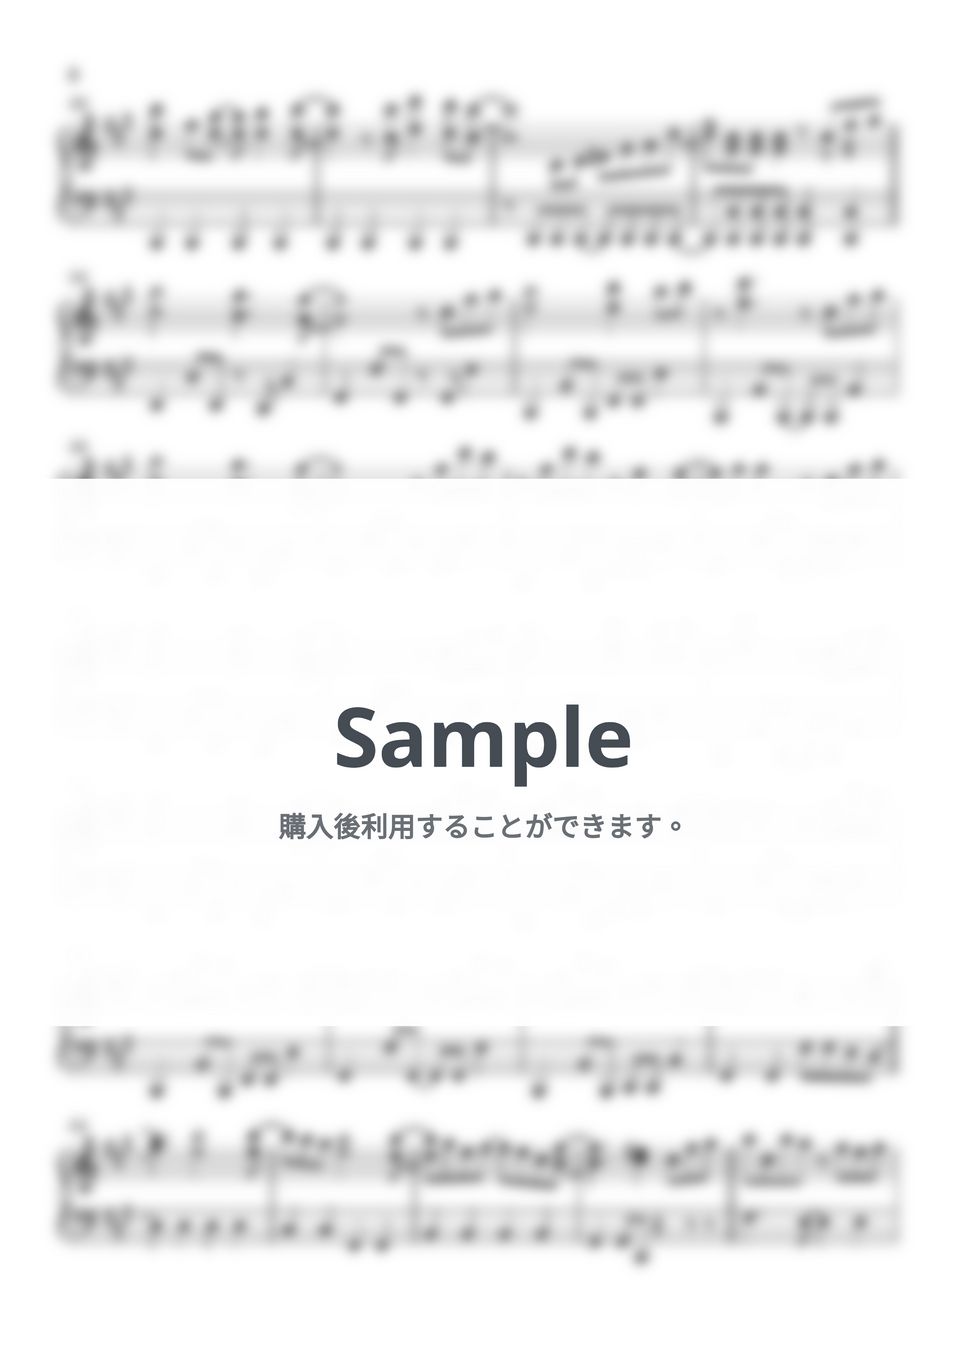 いきものがかり - ブルーバード (ナルト(NARUTO) / ピアノ楽譜 / 初級) by Piano Lovers. jp